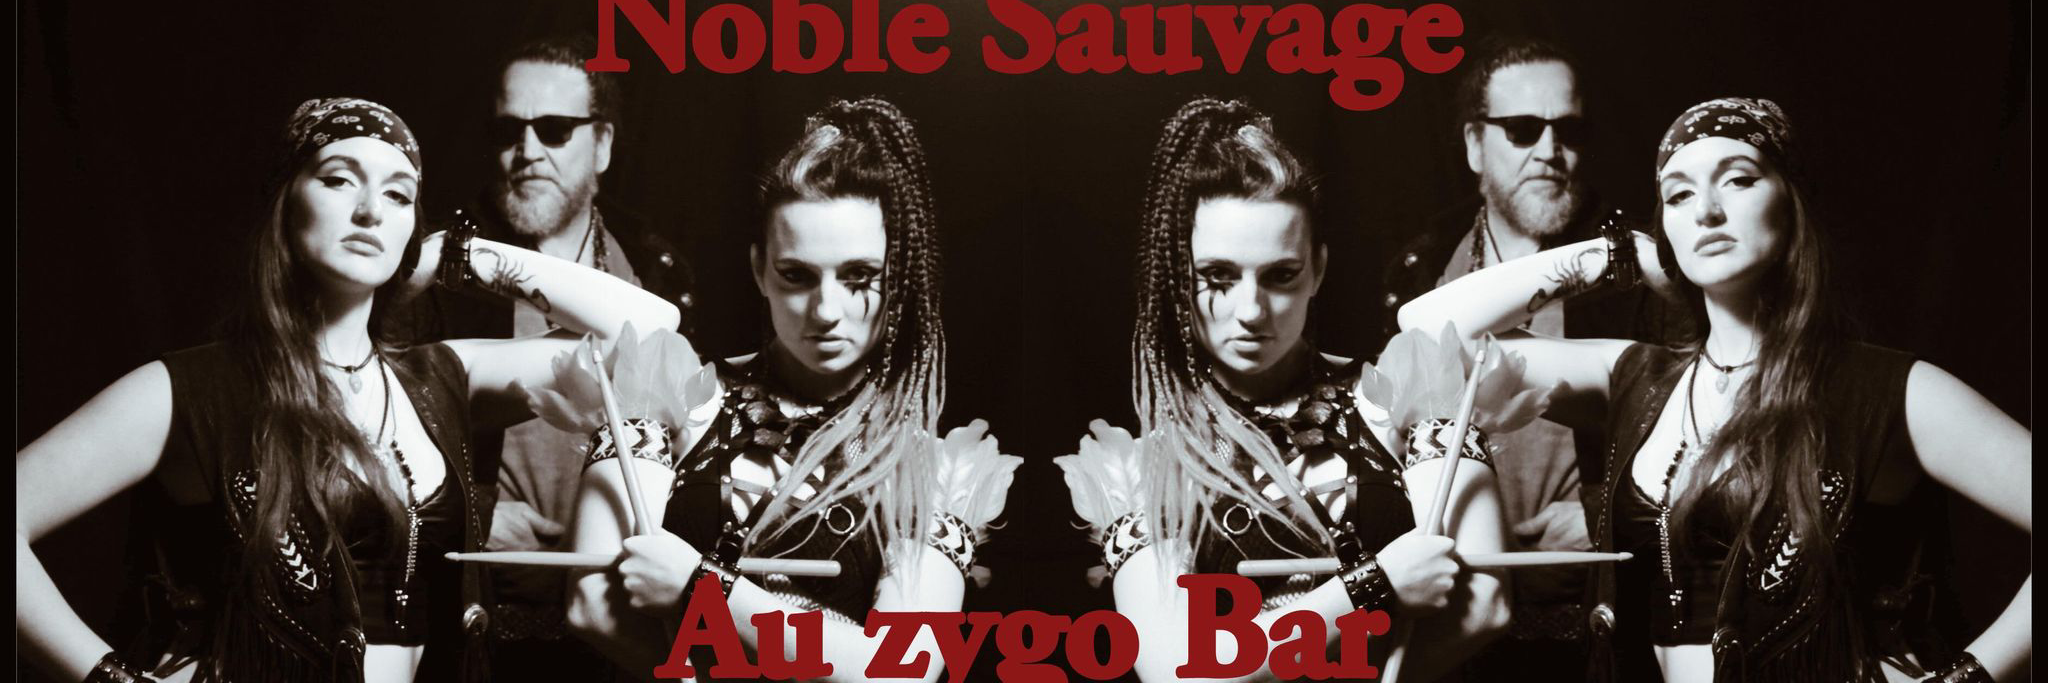 Noble Sauvage, groupe de musique Rock en représentation - photo de couverture n° 2